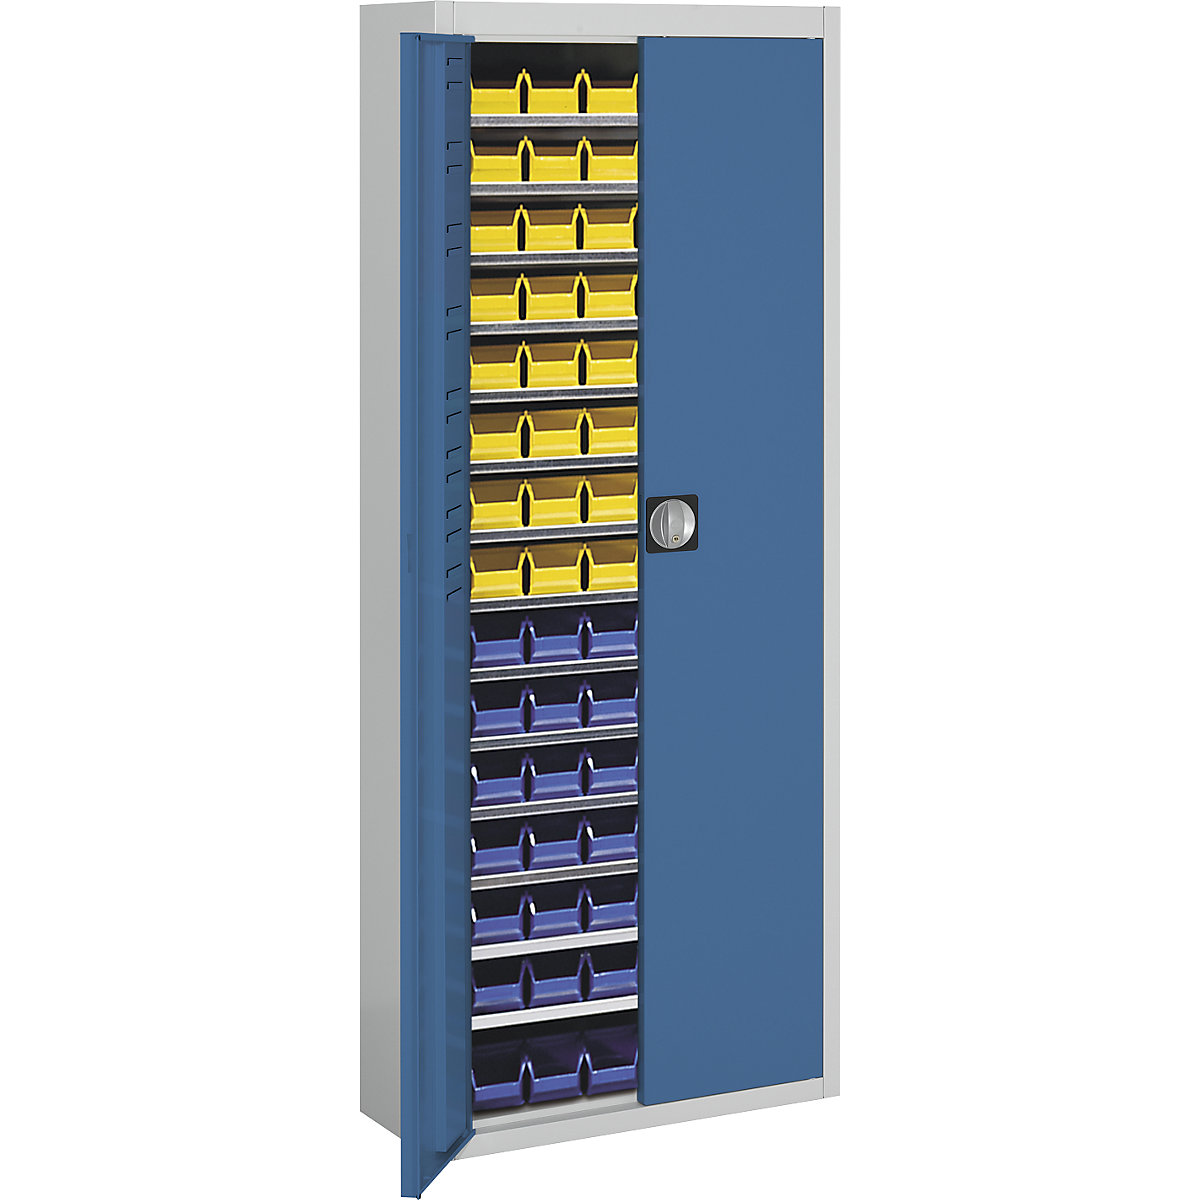 Skladišni ormar s otvorenim skladišnim kutijama – mauser, VxŠxD 1740 x 680 x 280 mm, u dvije boje, korpus u sivoj boji, vrata u plavoj boji, 90 kutija-17